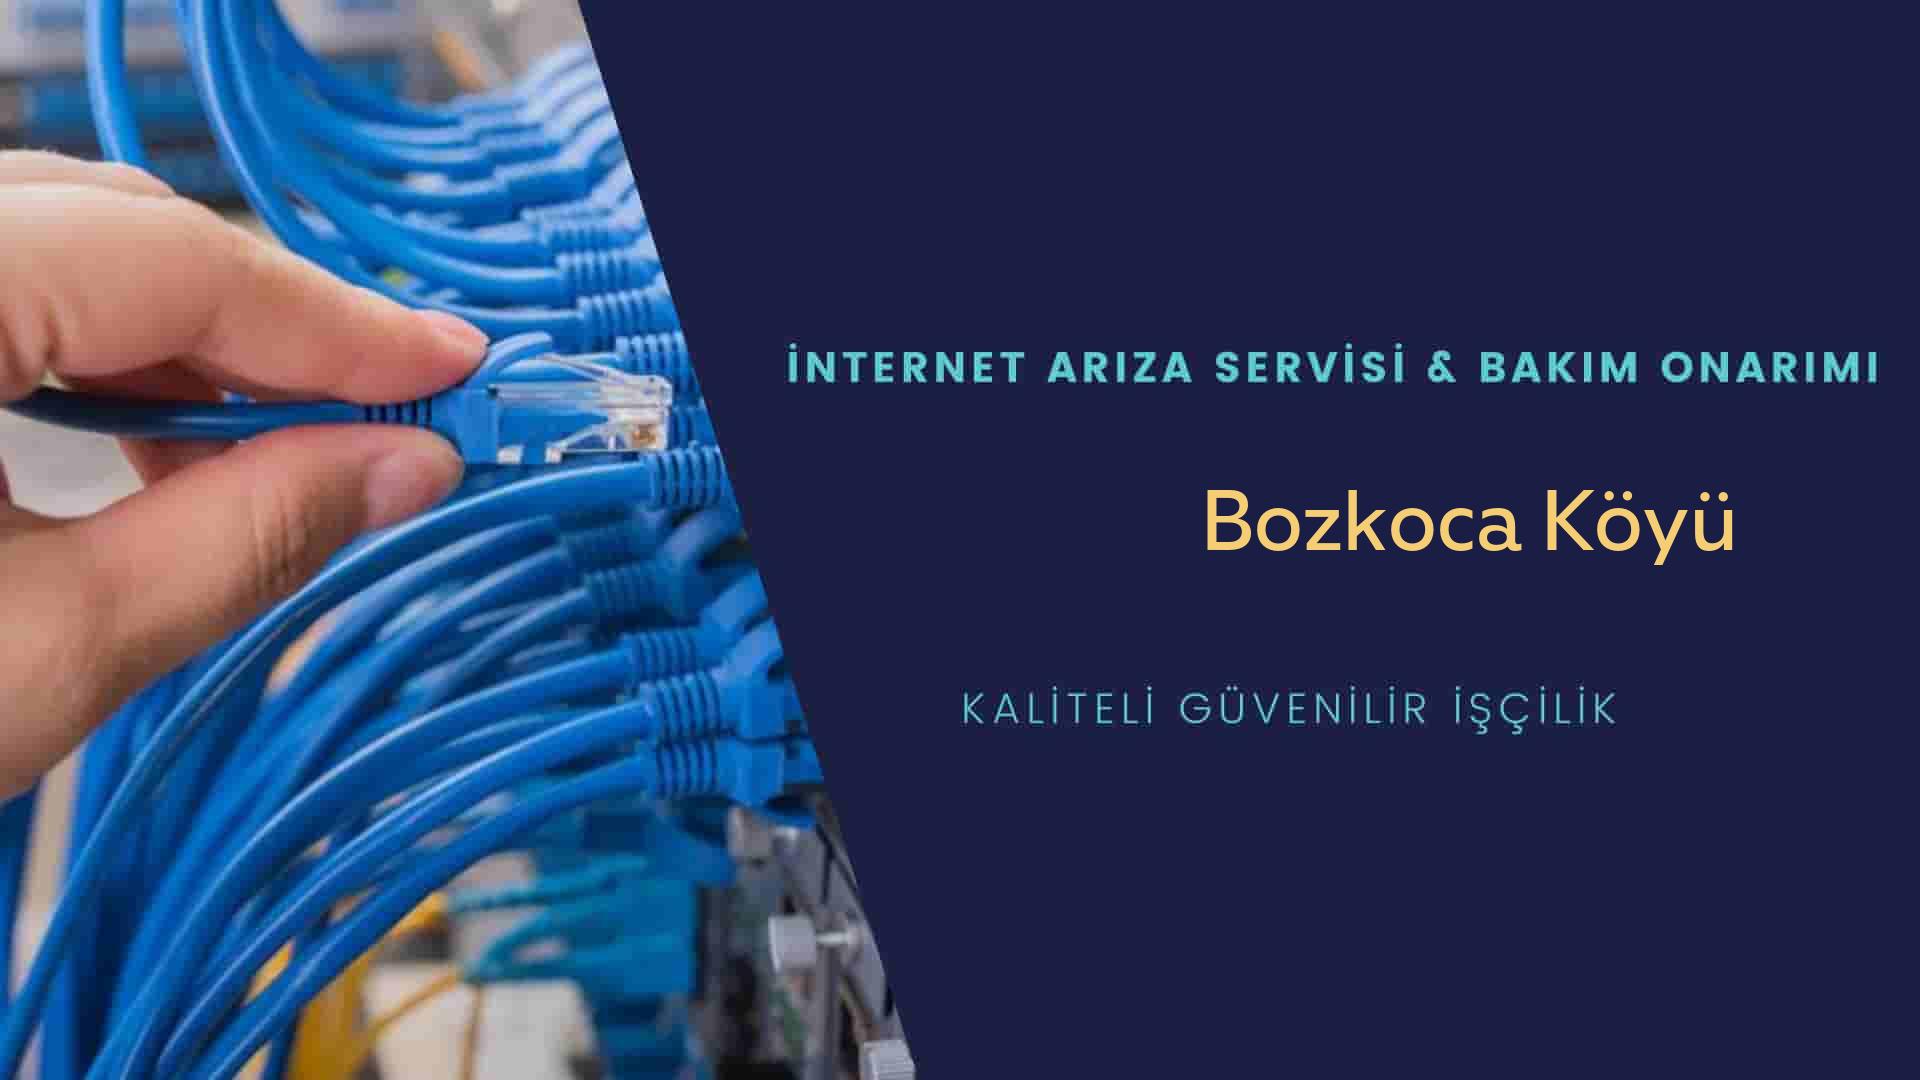 Bozkoca Köyü internet kablosu çekimi yapan yerler veya elektrikçiler mi? arıyorsunuz doğru yerdesiniz o zaman sizlere 7/24 yardımcı olacak profesyonel ustalarımız bir telefon kadar yakındır size.